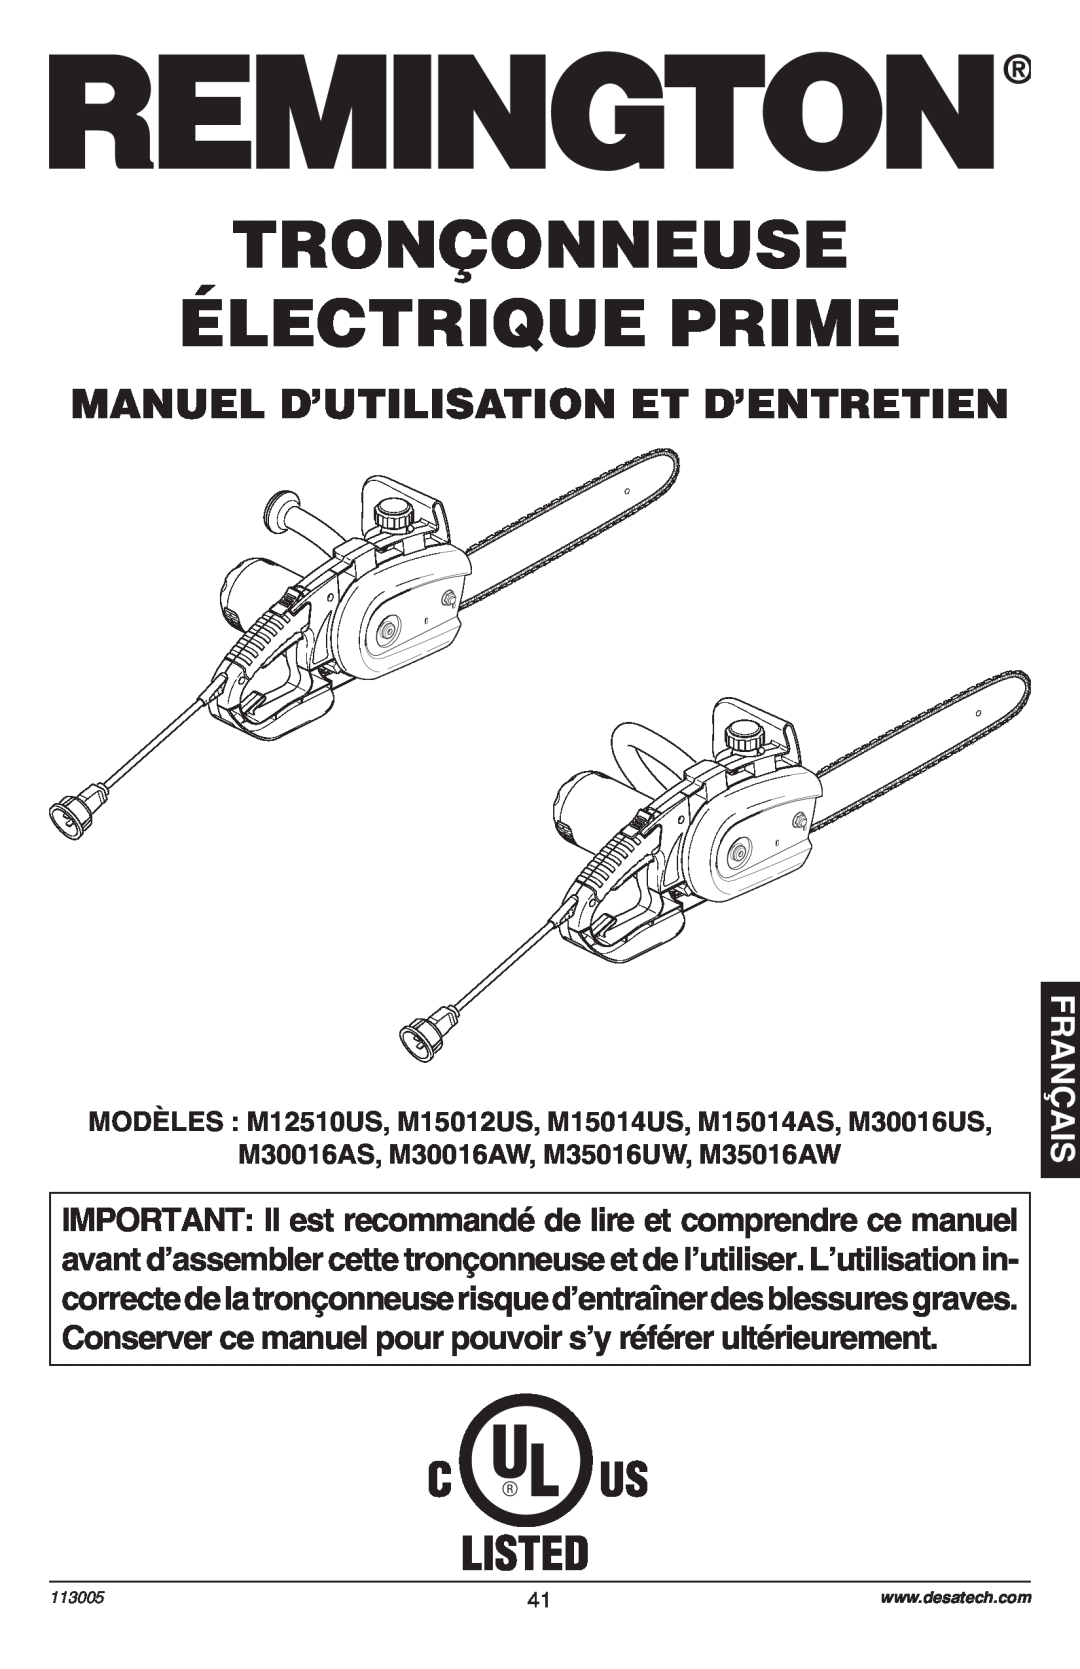 Remington Power Tools Electric Chain Saw Tronçonneuse Électrique Prime, Français, Manuel D’Utilisation Et D’Entretien 